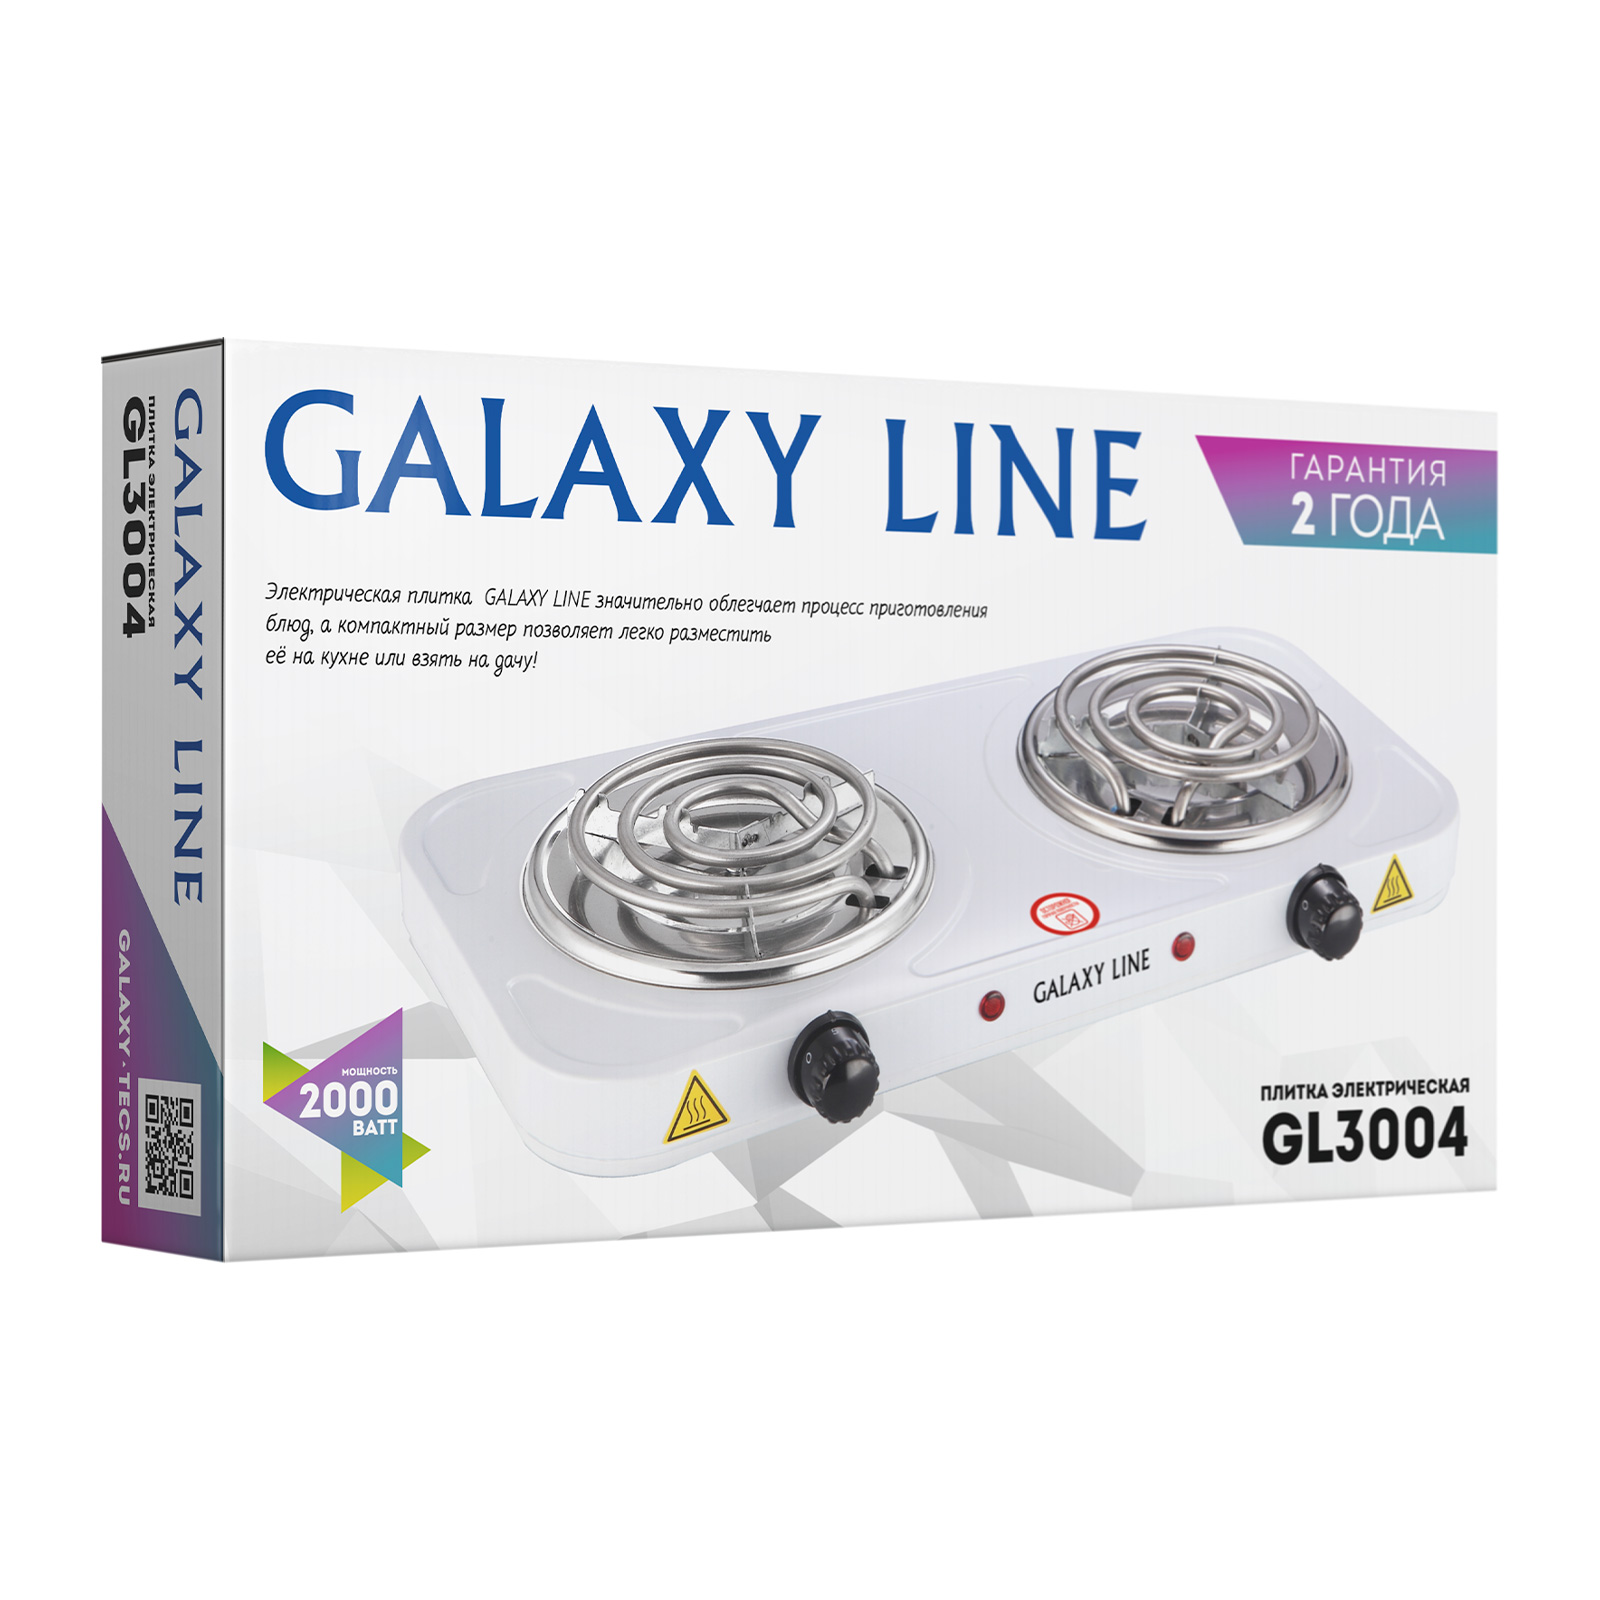 Плита электрическая Galaxy Line GL3004